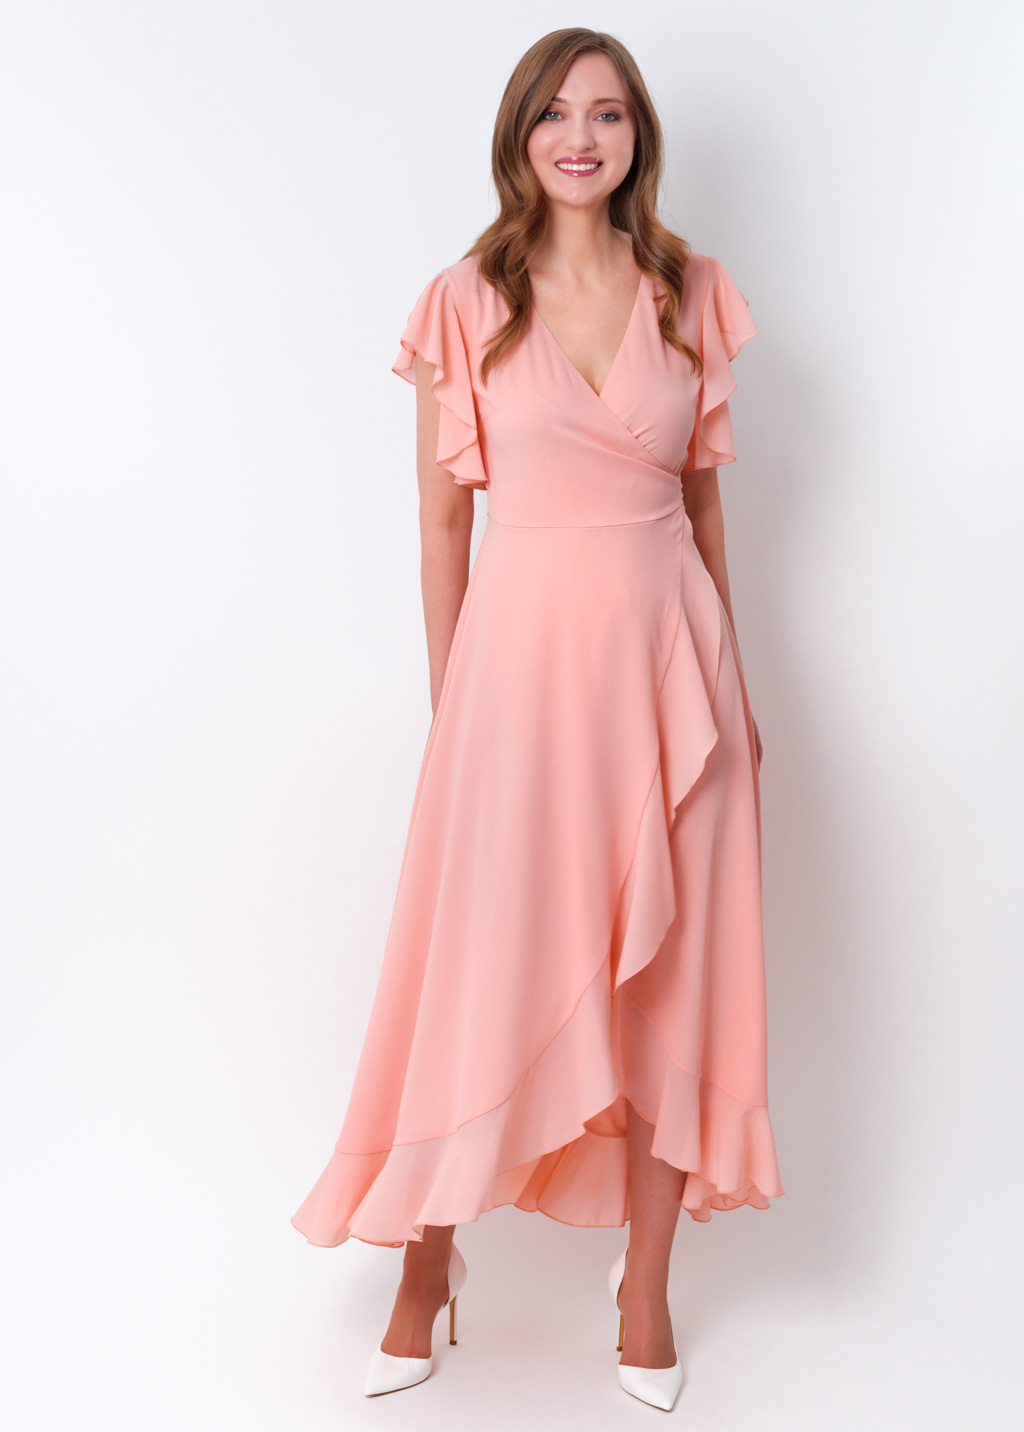 Blush pink chiffon wrap dress